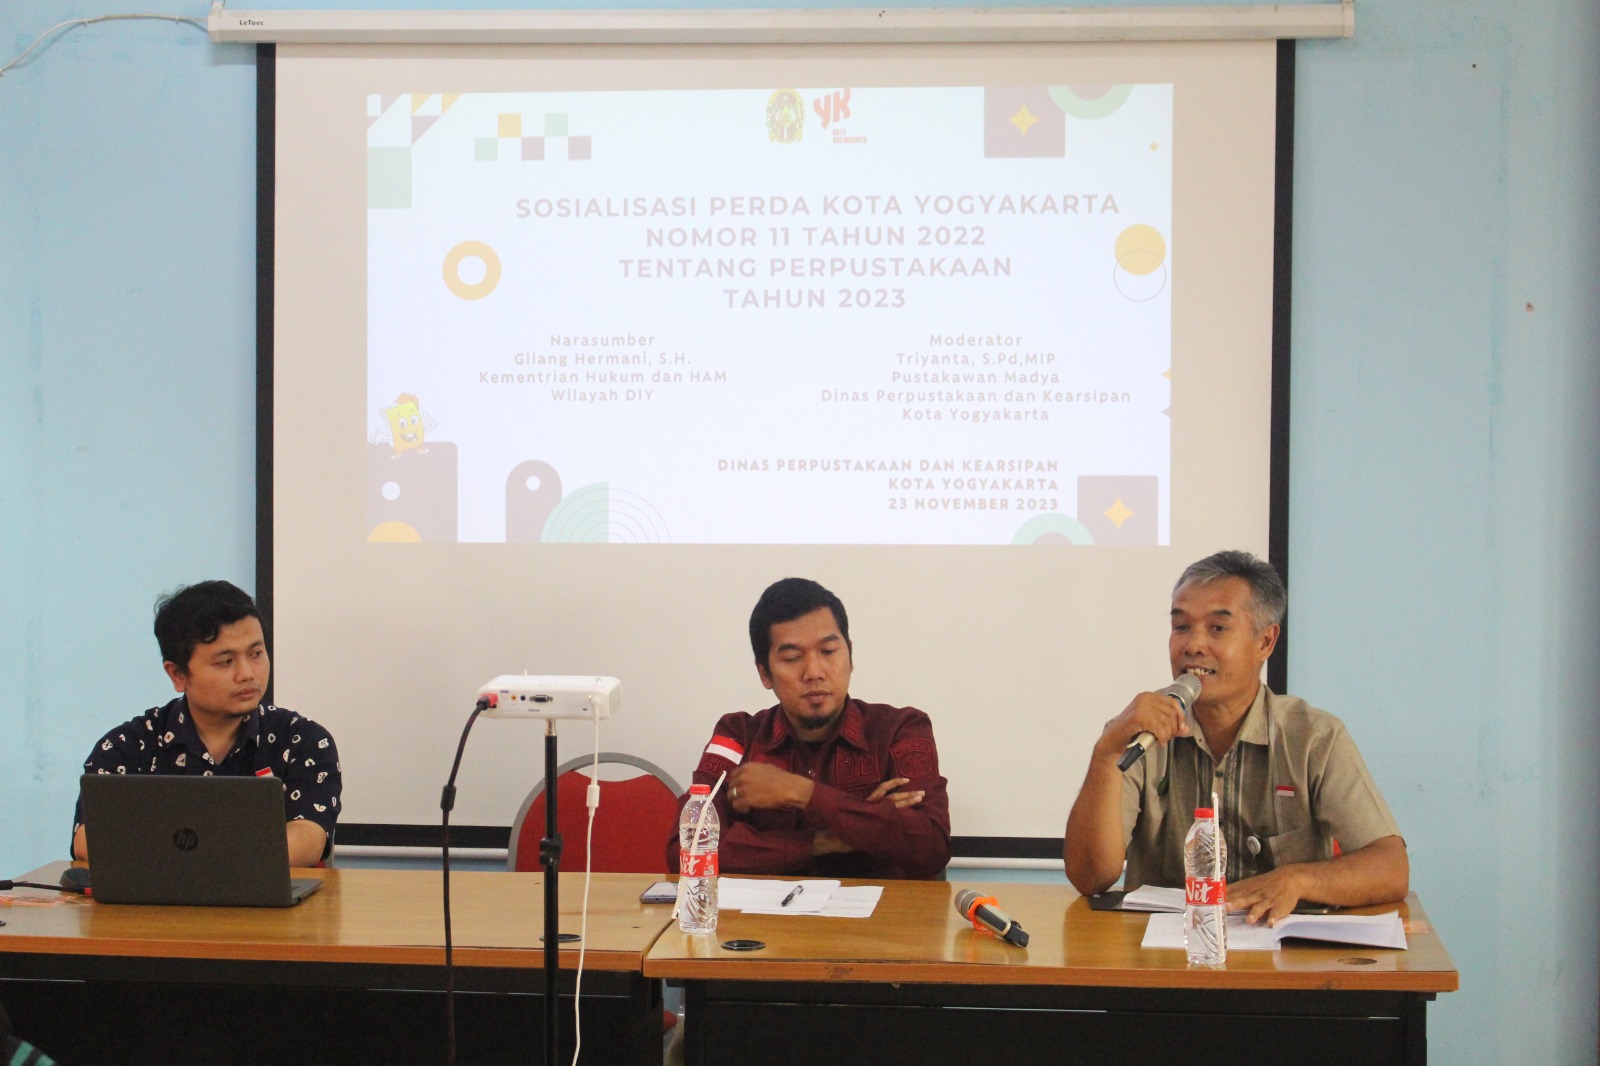 Sosialisasi Peraturan Daerah Kota Yogyakarta Nomor 11 Tahun 2022 tentang Perpustakaan